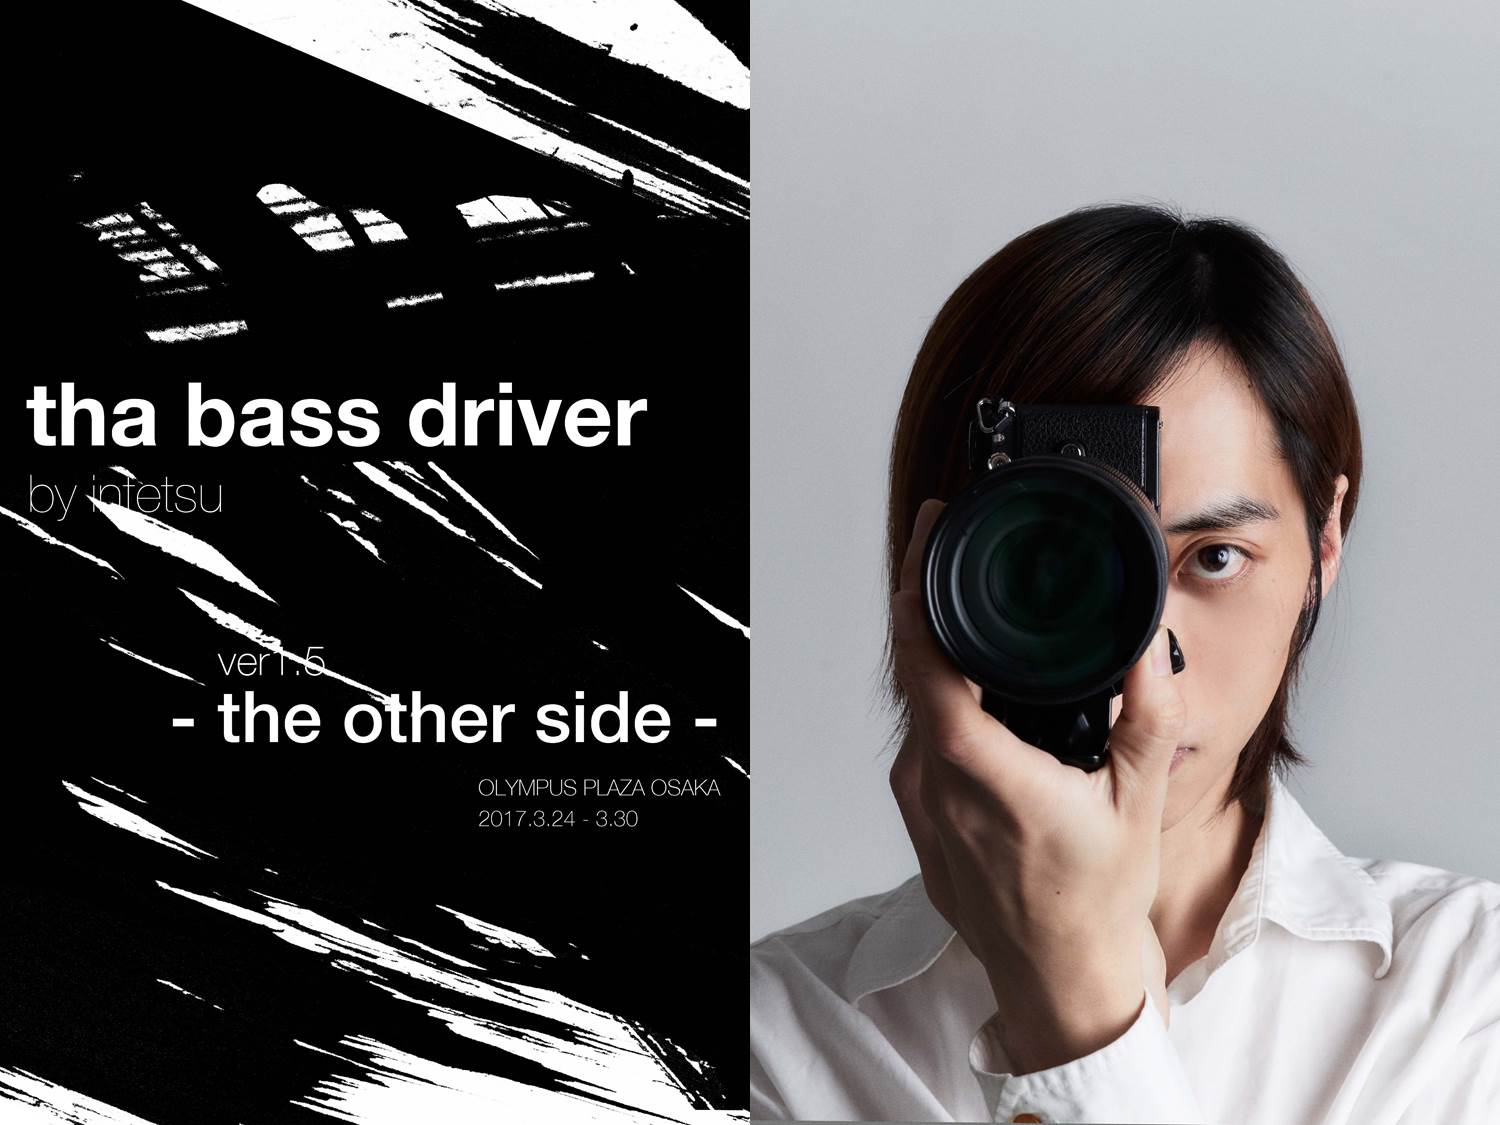 3/24(金)インテツ写真展「tha bass driver ver.1.5 -the other side-」